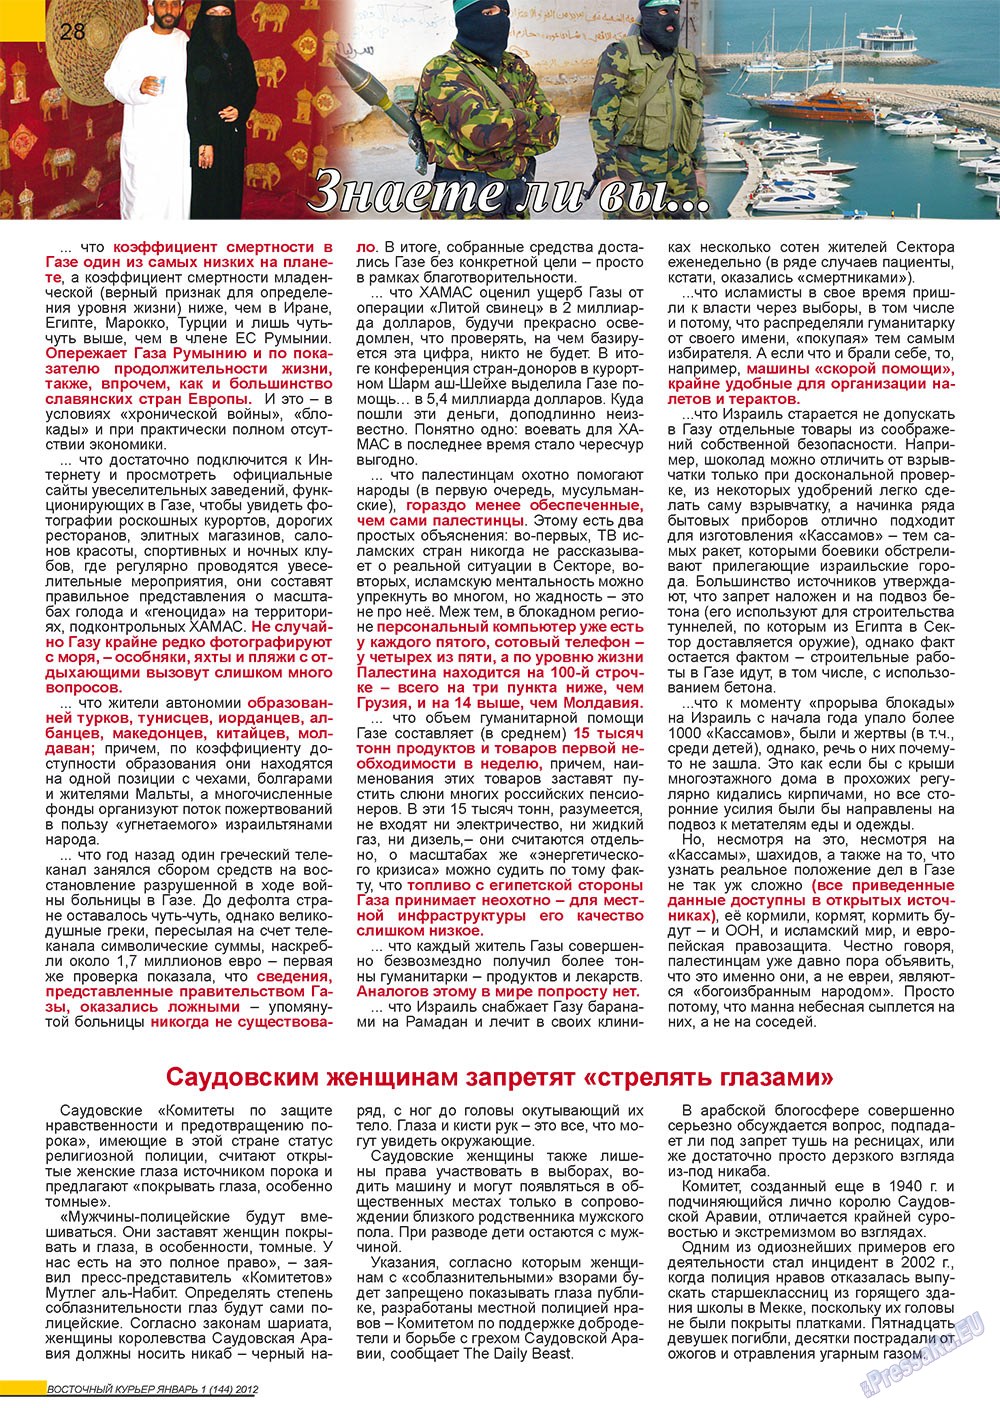 Восточный курьер, журнал. 2012 №1 стр.28